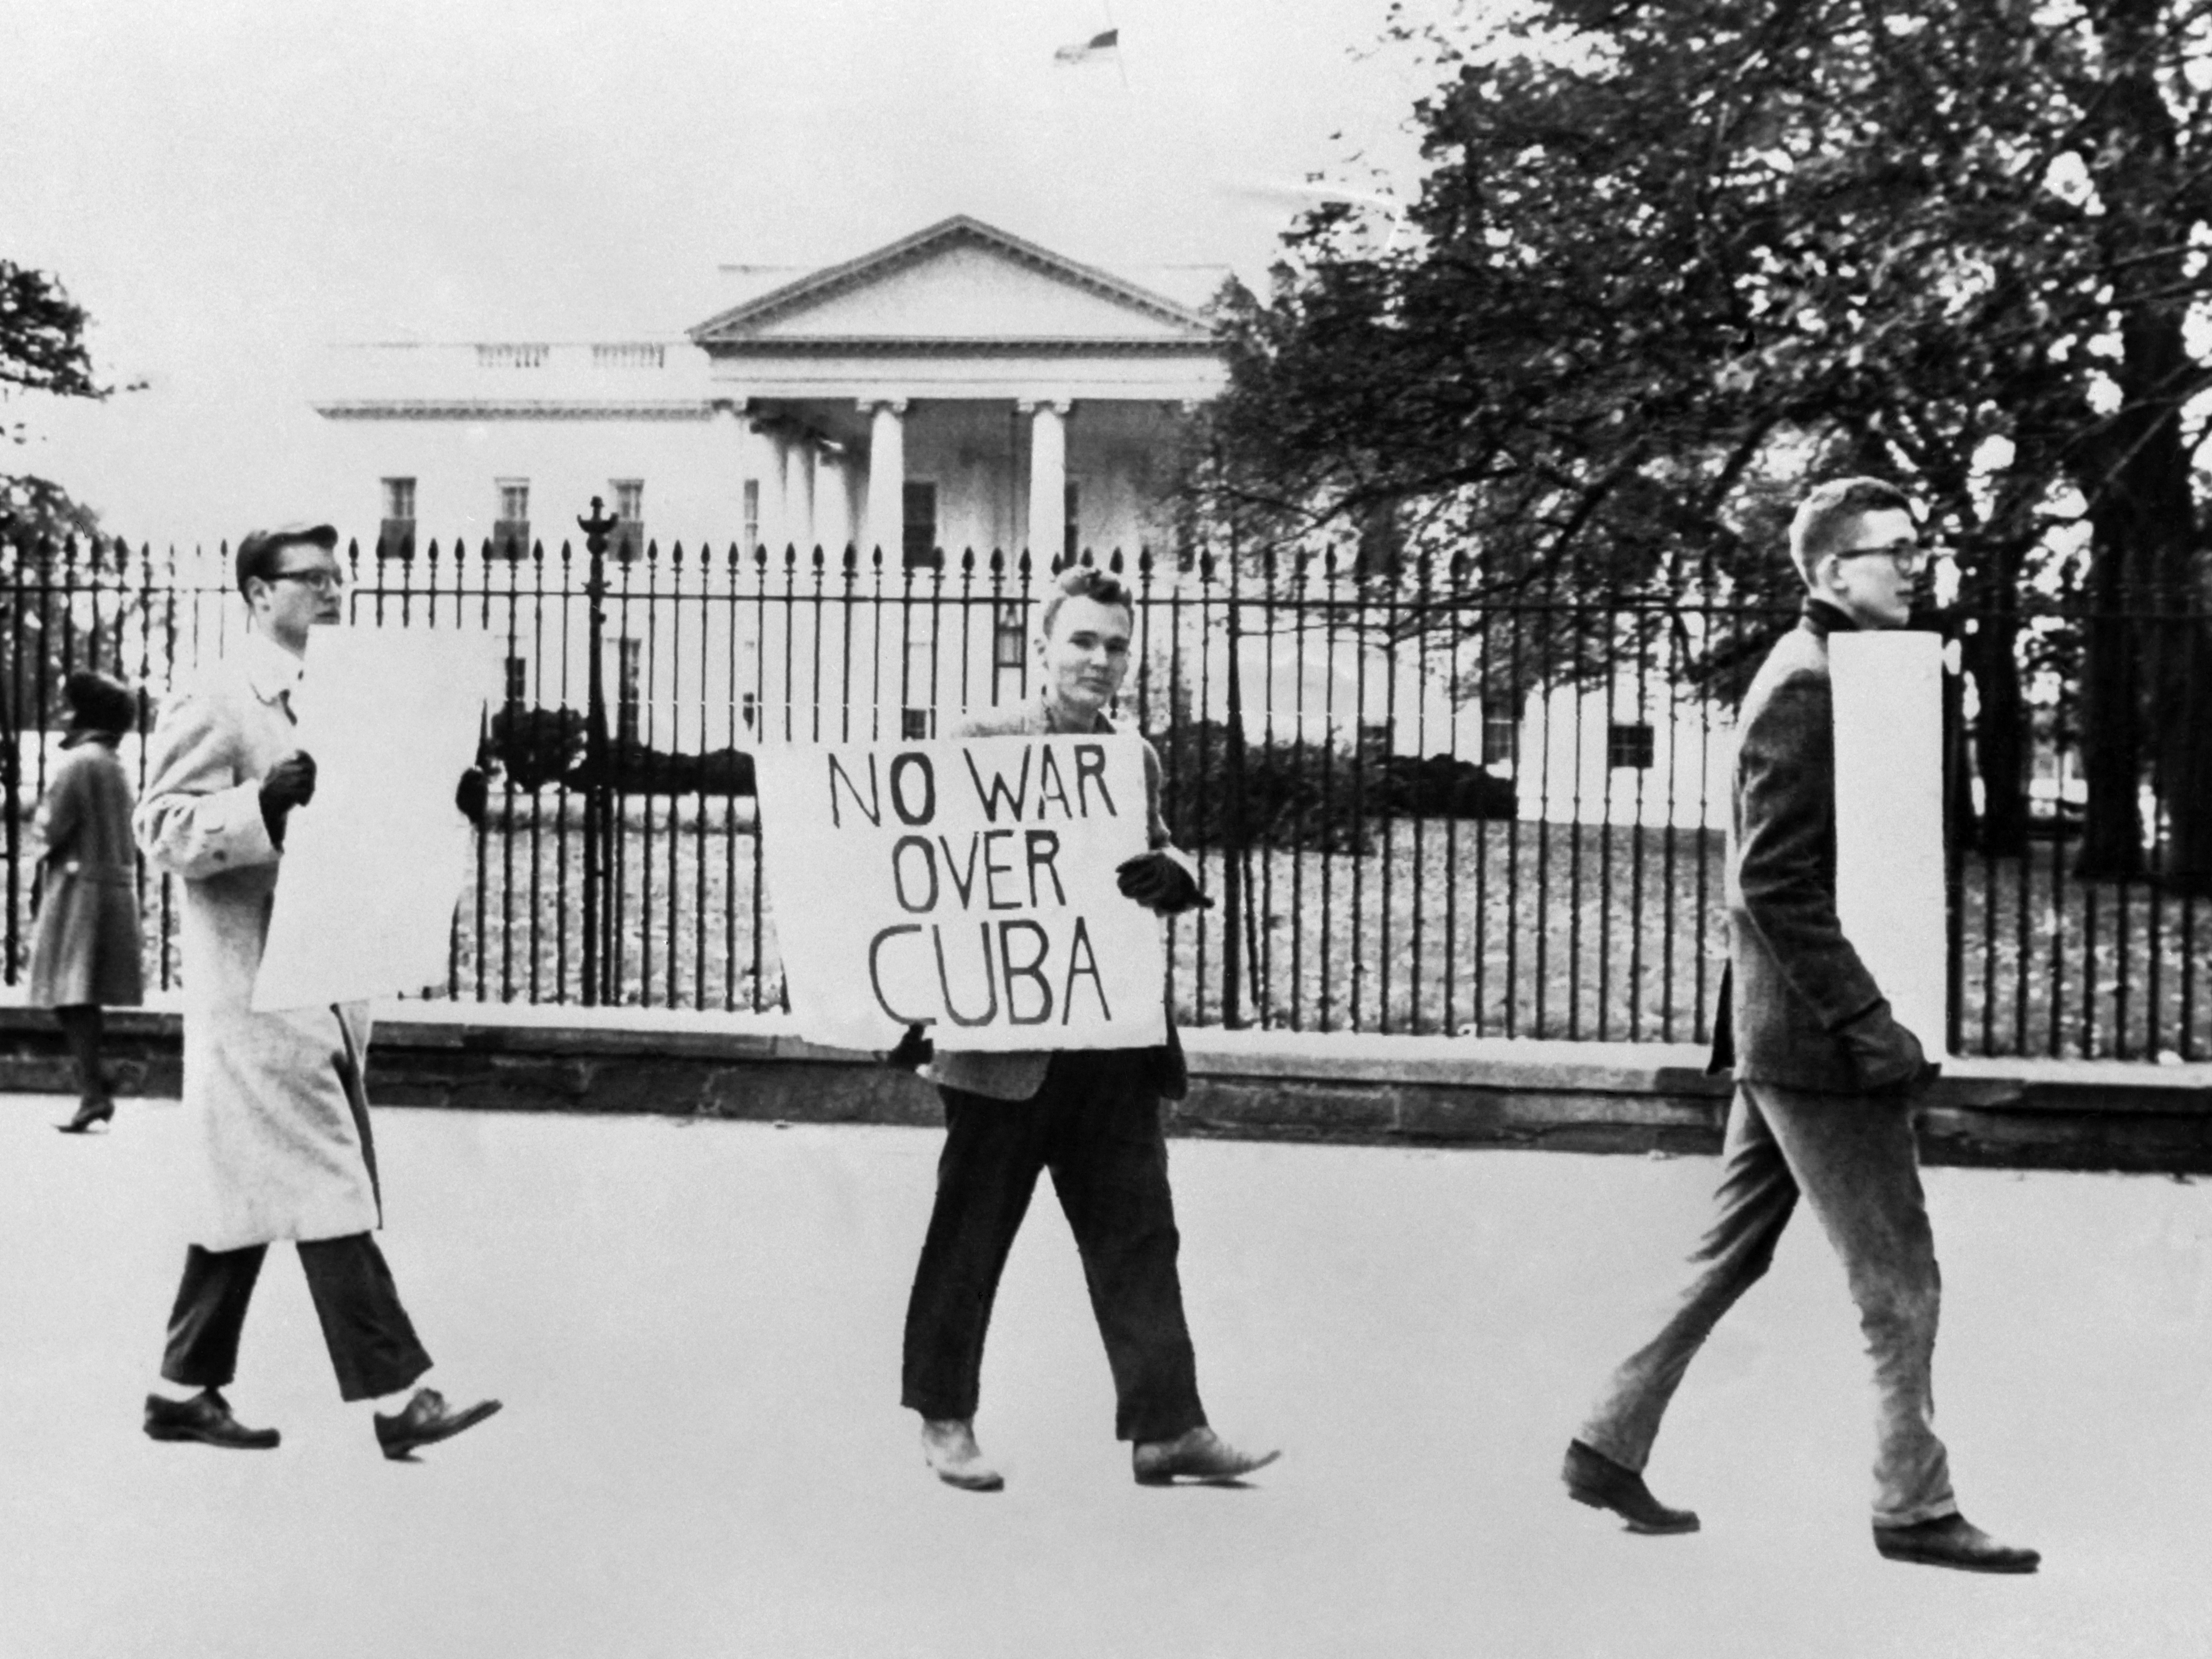 Pessoas protestam contra a guerra em 27 de outubro de 1962 em frente à Casa Branca em Washington, DC, durante a crise dos mísseis cubanos.  Em 22 de outubro de 1962, o presidente Kennedy informou ao povo americano da presença de locais de mísseis em Cuba.  As tensões aumentaram e o mundo se perguntou se poderia haver uma solução pacífica para a crise, até 20 de novembro de 1962, quando bombardeiros russos deixaram Cuba e Kennedy levantou o bloqueio naval.  (Foto: AFP)